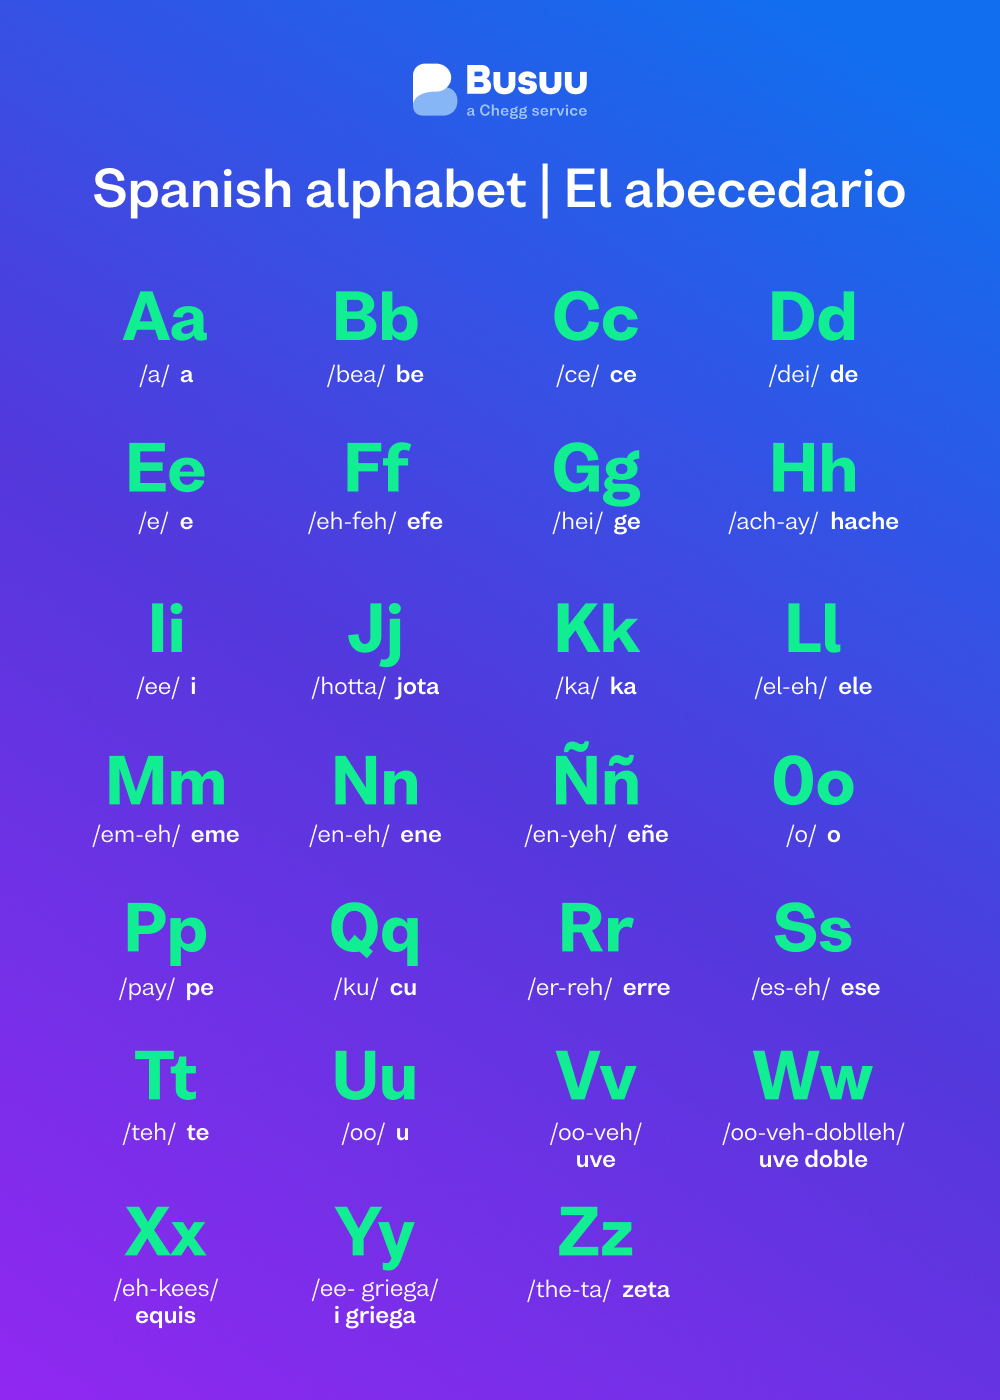 Spanish alphabet chart, courtesy of language-learning app Busuu's Spanish alphabet guide